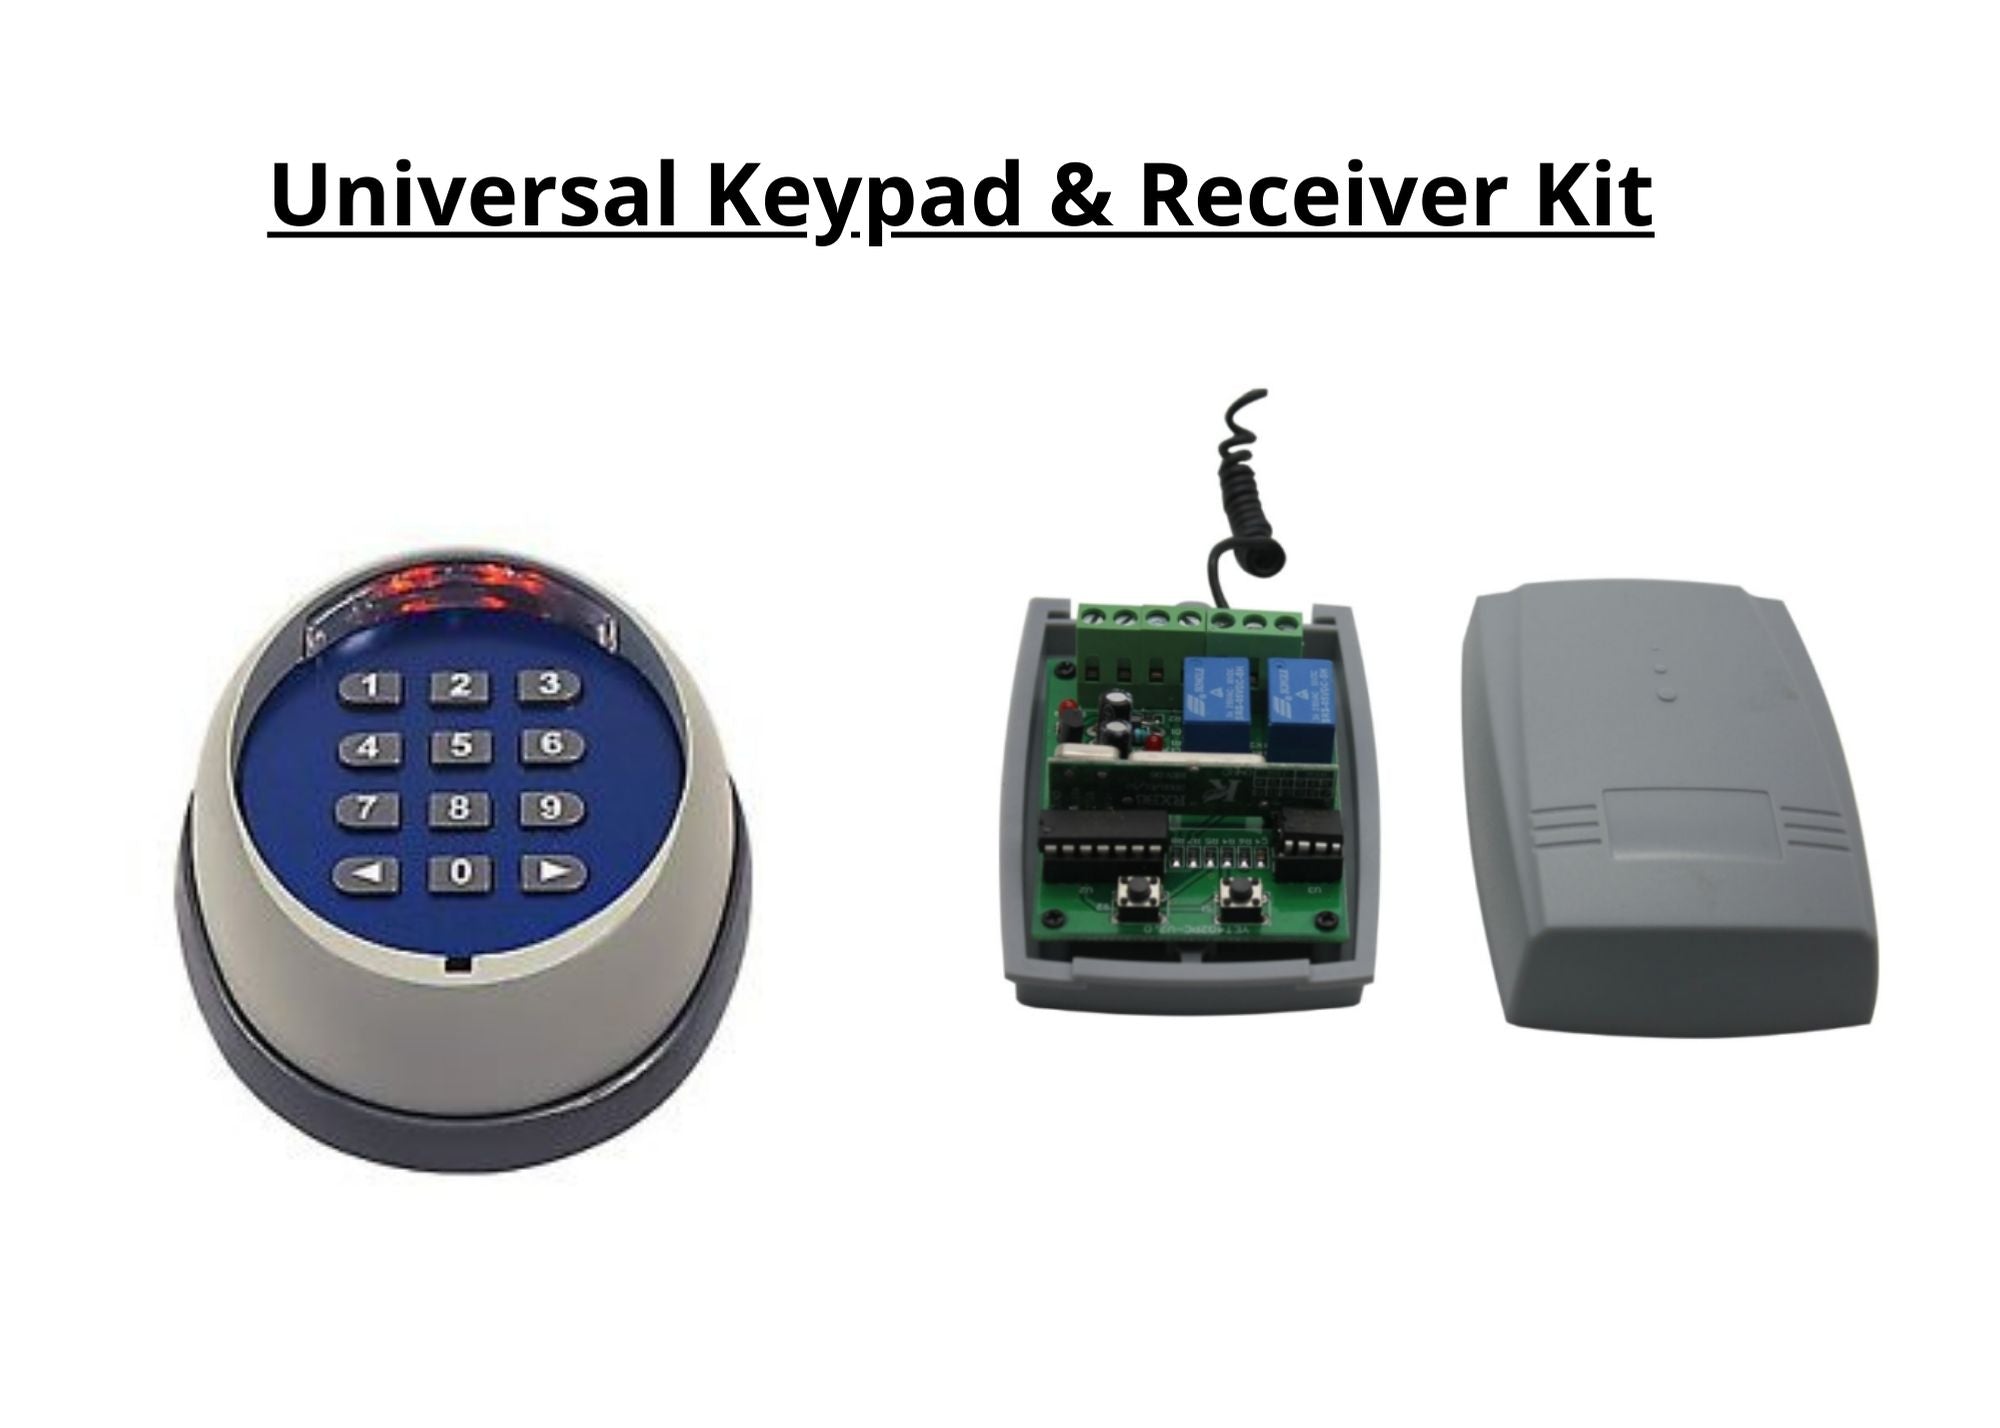 Universal Keypad Kit for swing or slide system any brand